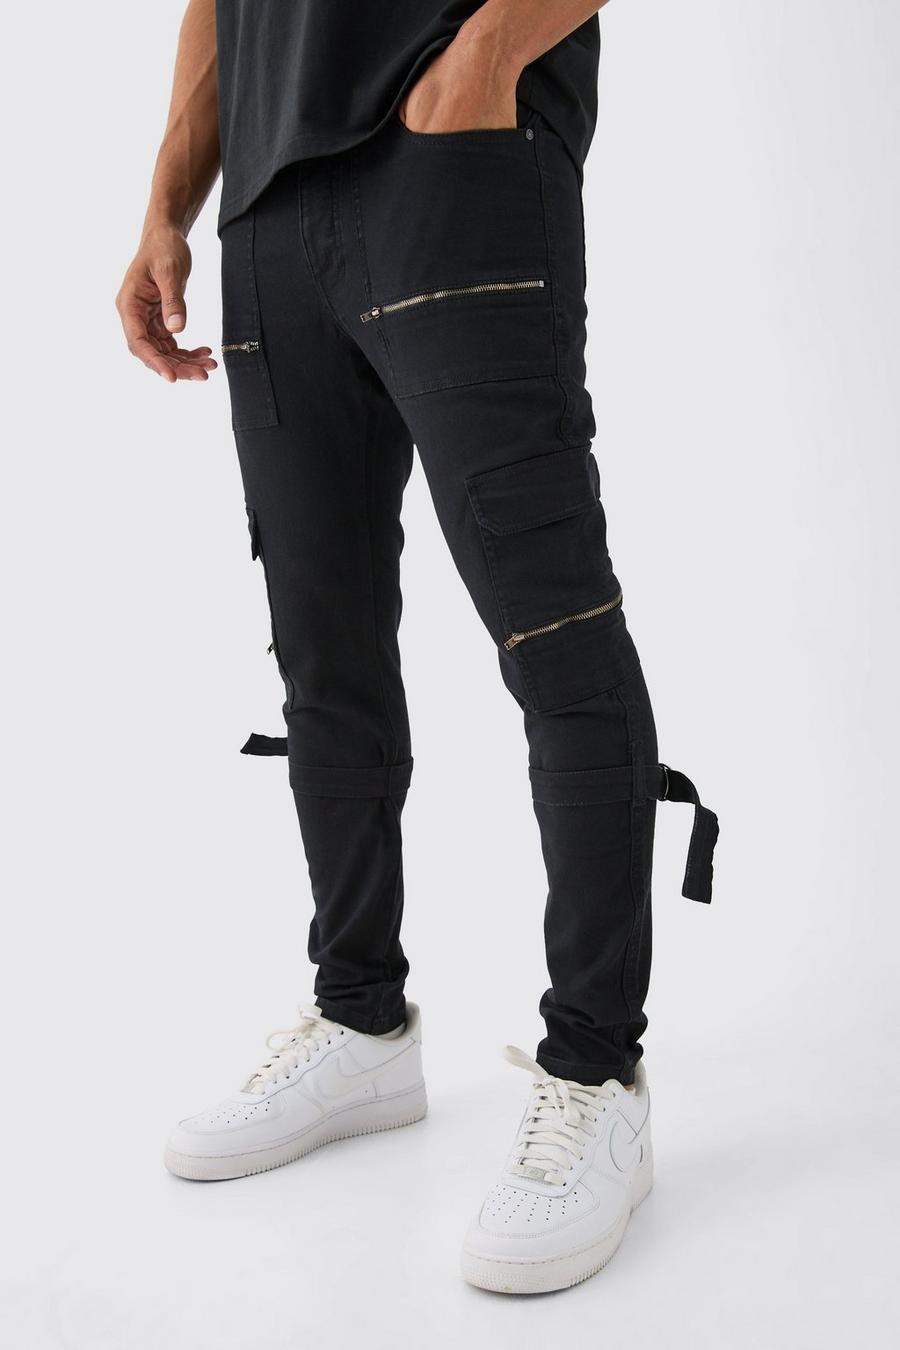 Pantalon cargo skinny zippé à bretelles, Black